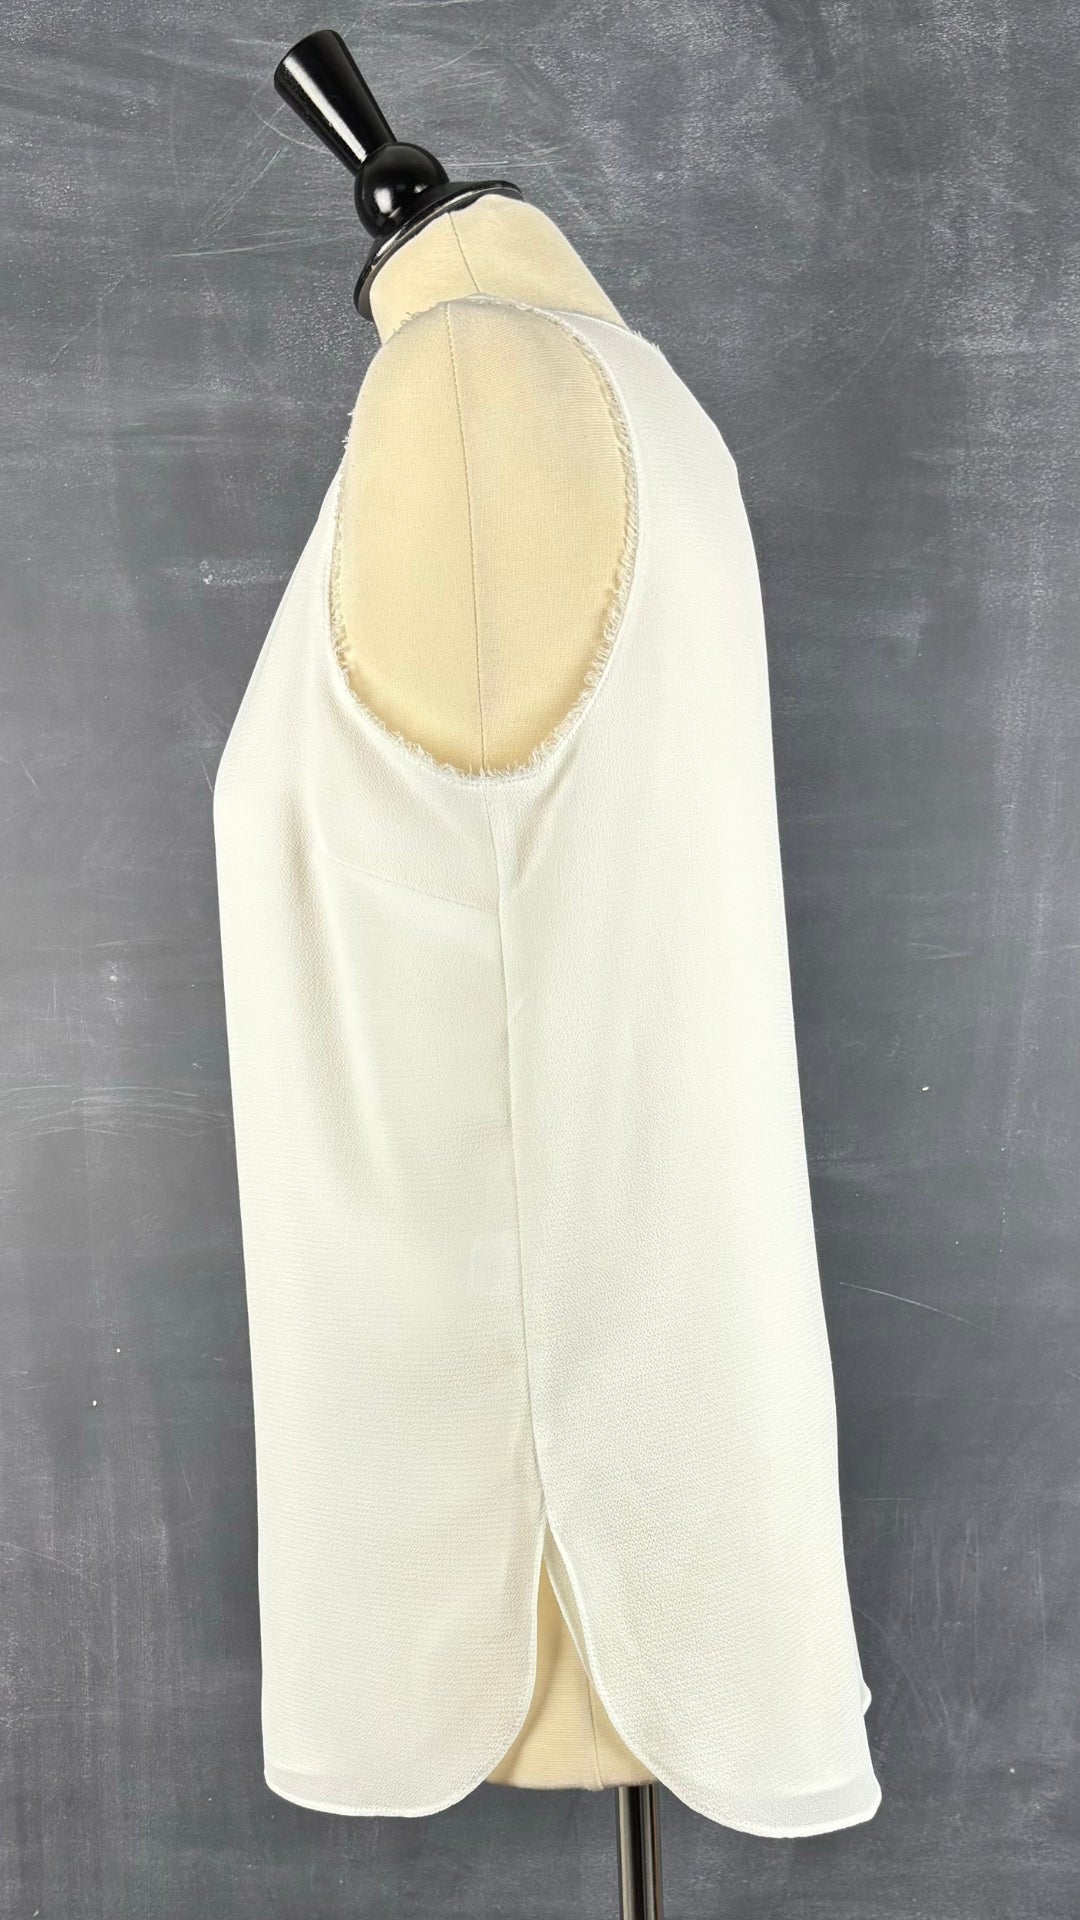 Camisole texturée blanc crème Iris Setlakwe, taille 6. Vue de côté.